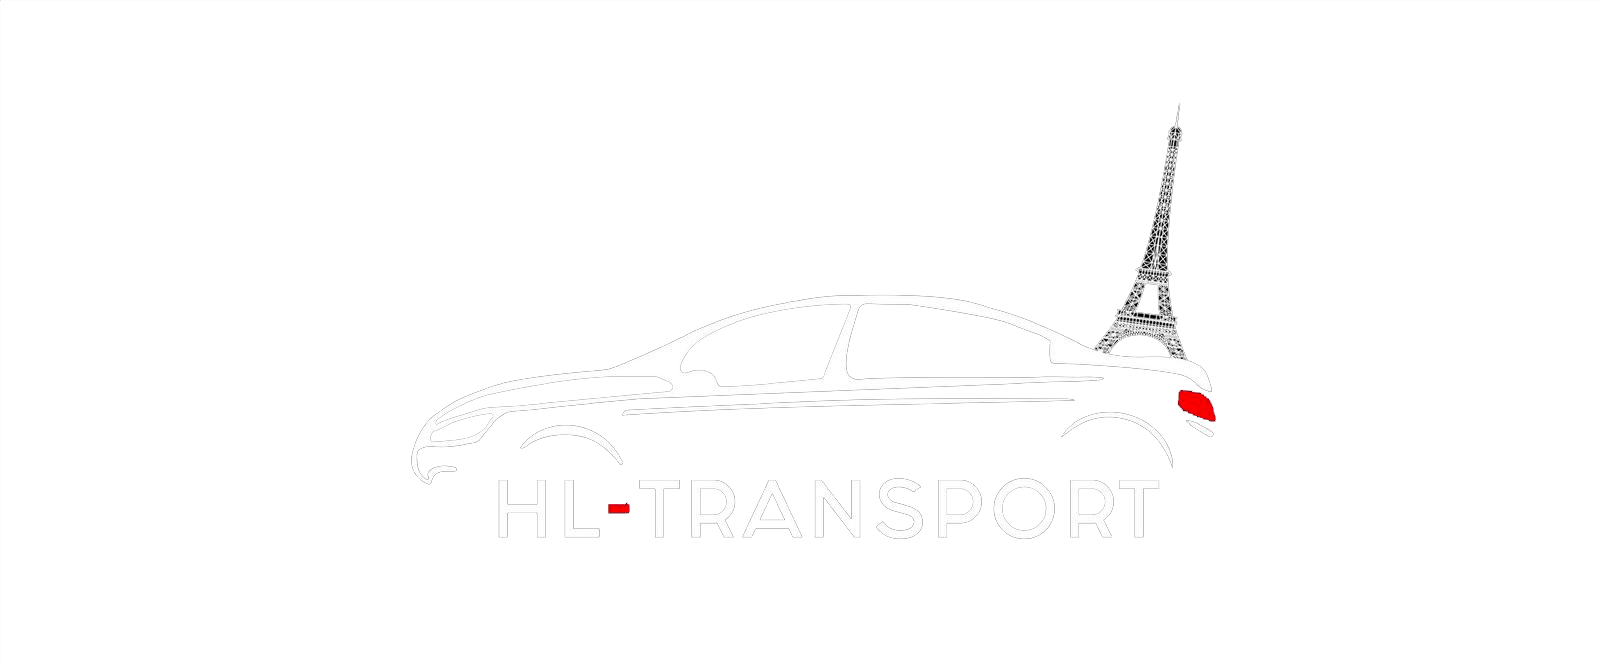 HL transport